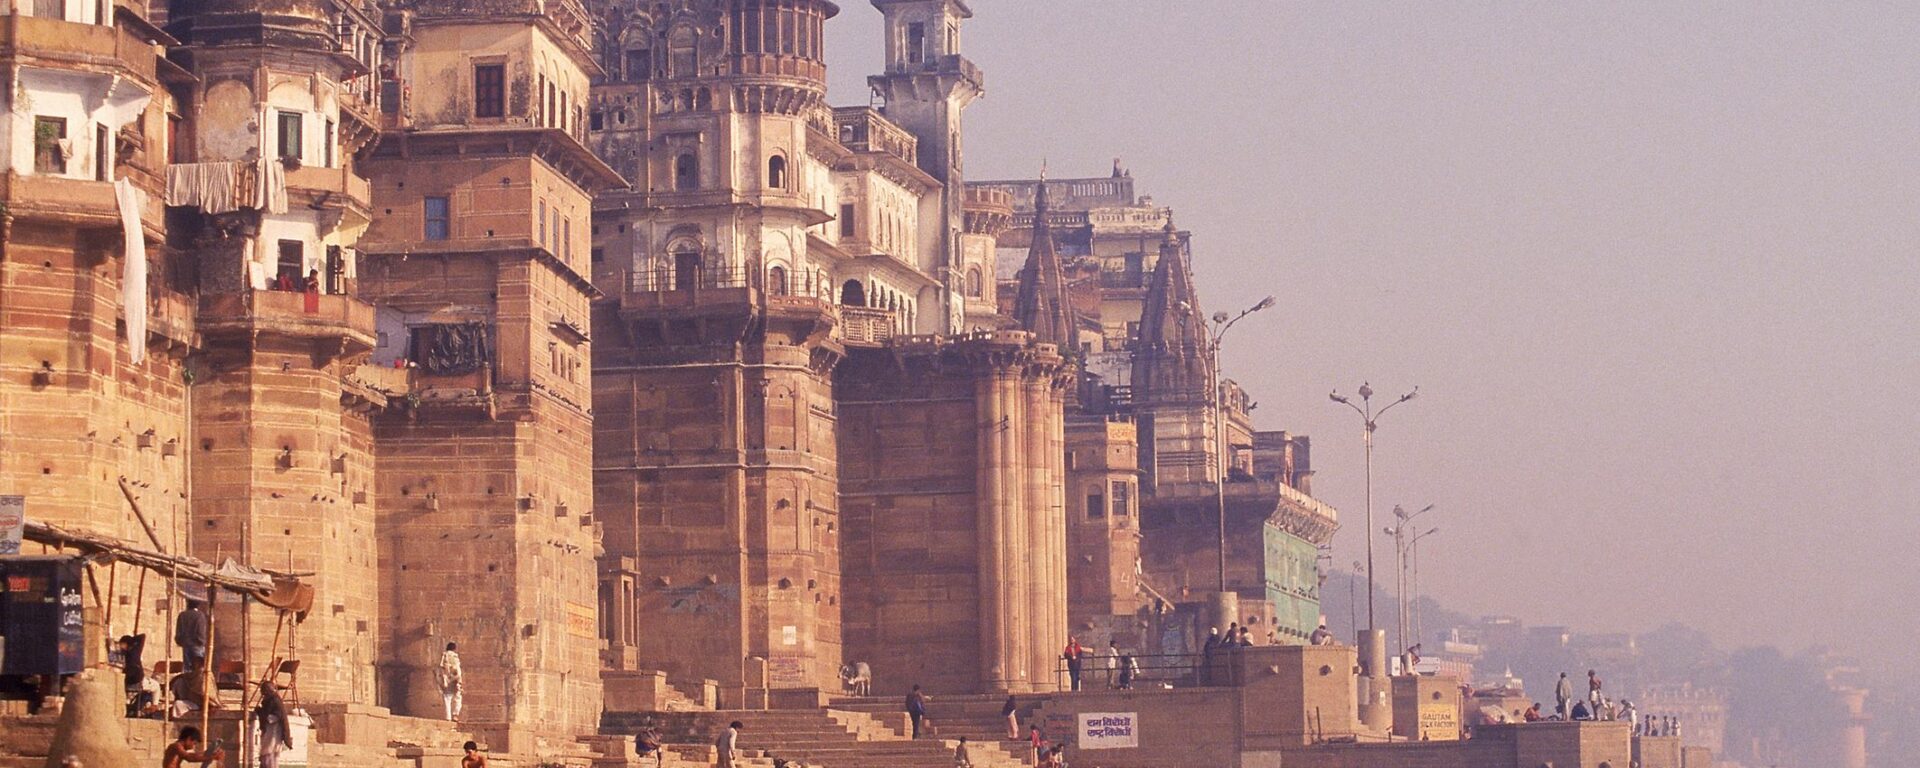 Ghat Varanasi